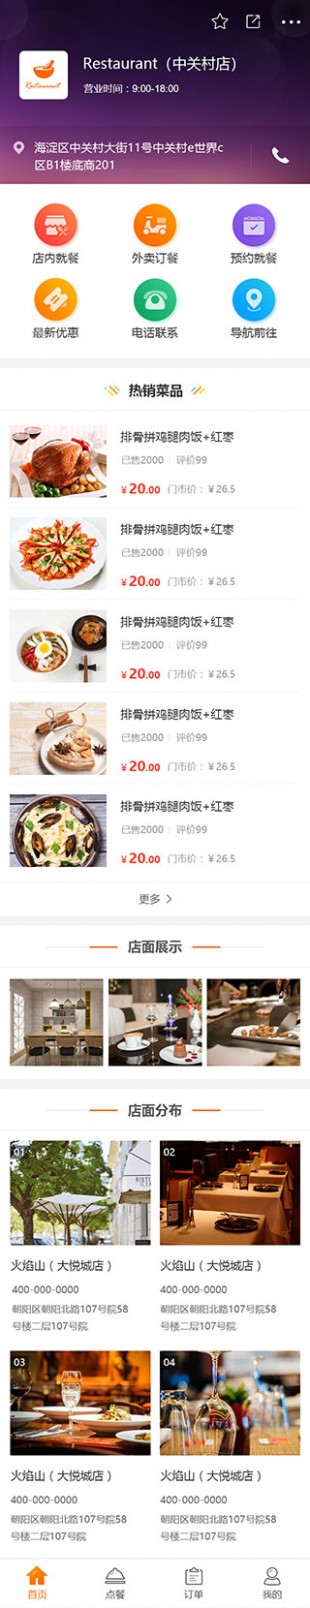 网上订餐类餐饮网站建设模板手机图片